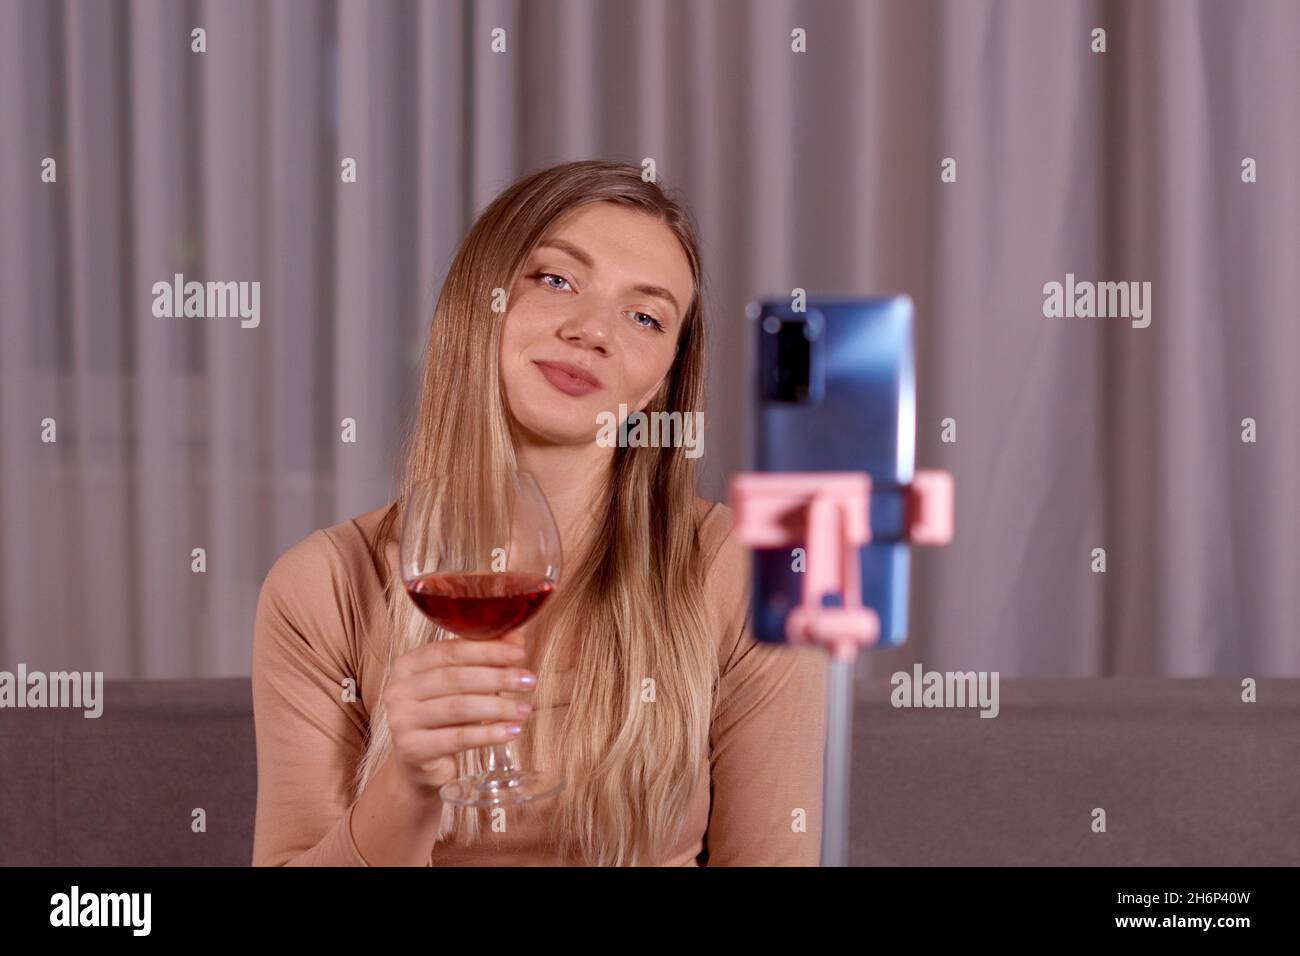 Jeune belle femme ayant à la nuit appel vidéo, à l'aide d'un smartphone, assis sur un canapé, boire du vin rouge.Concept de relation longue distance Banque D'Images